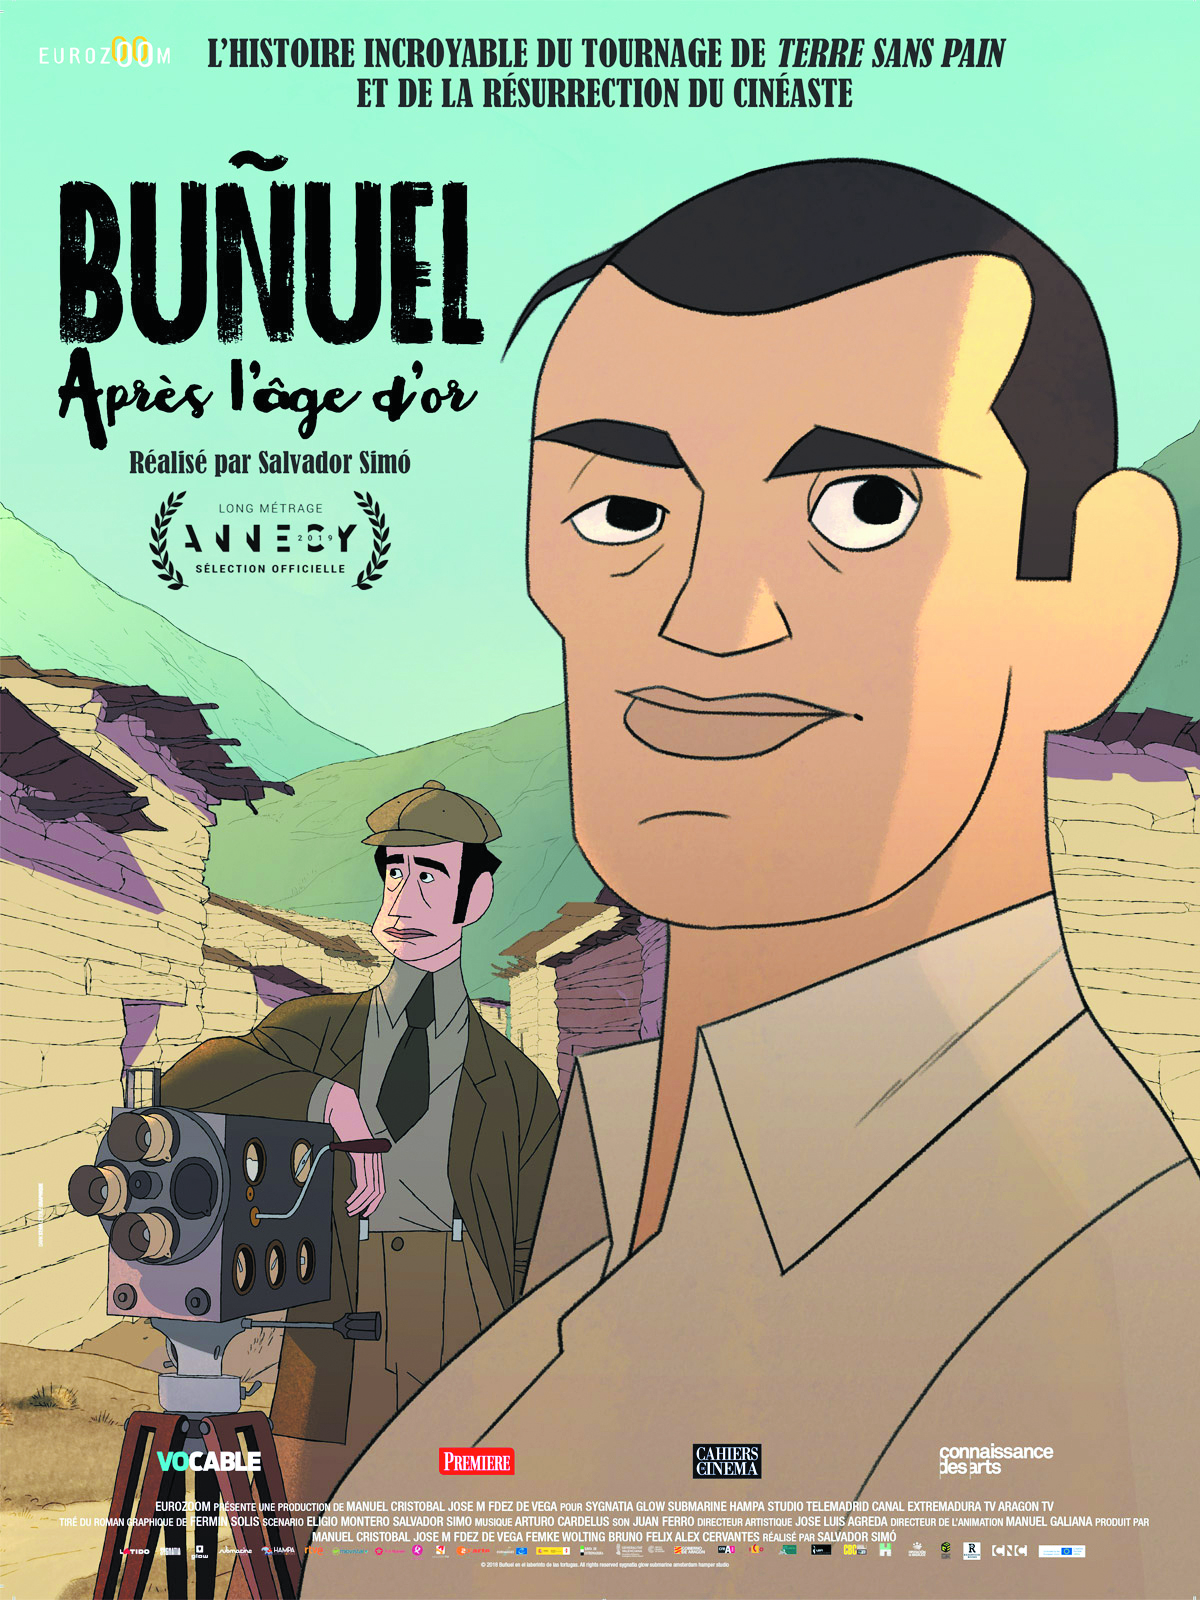 Projection du film "Buñuel après l’âge d’or" de Salvador Simó, Mercredi 20 novembre à 20h30 à la Cinémathèque de Corse.